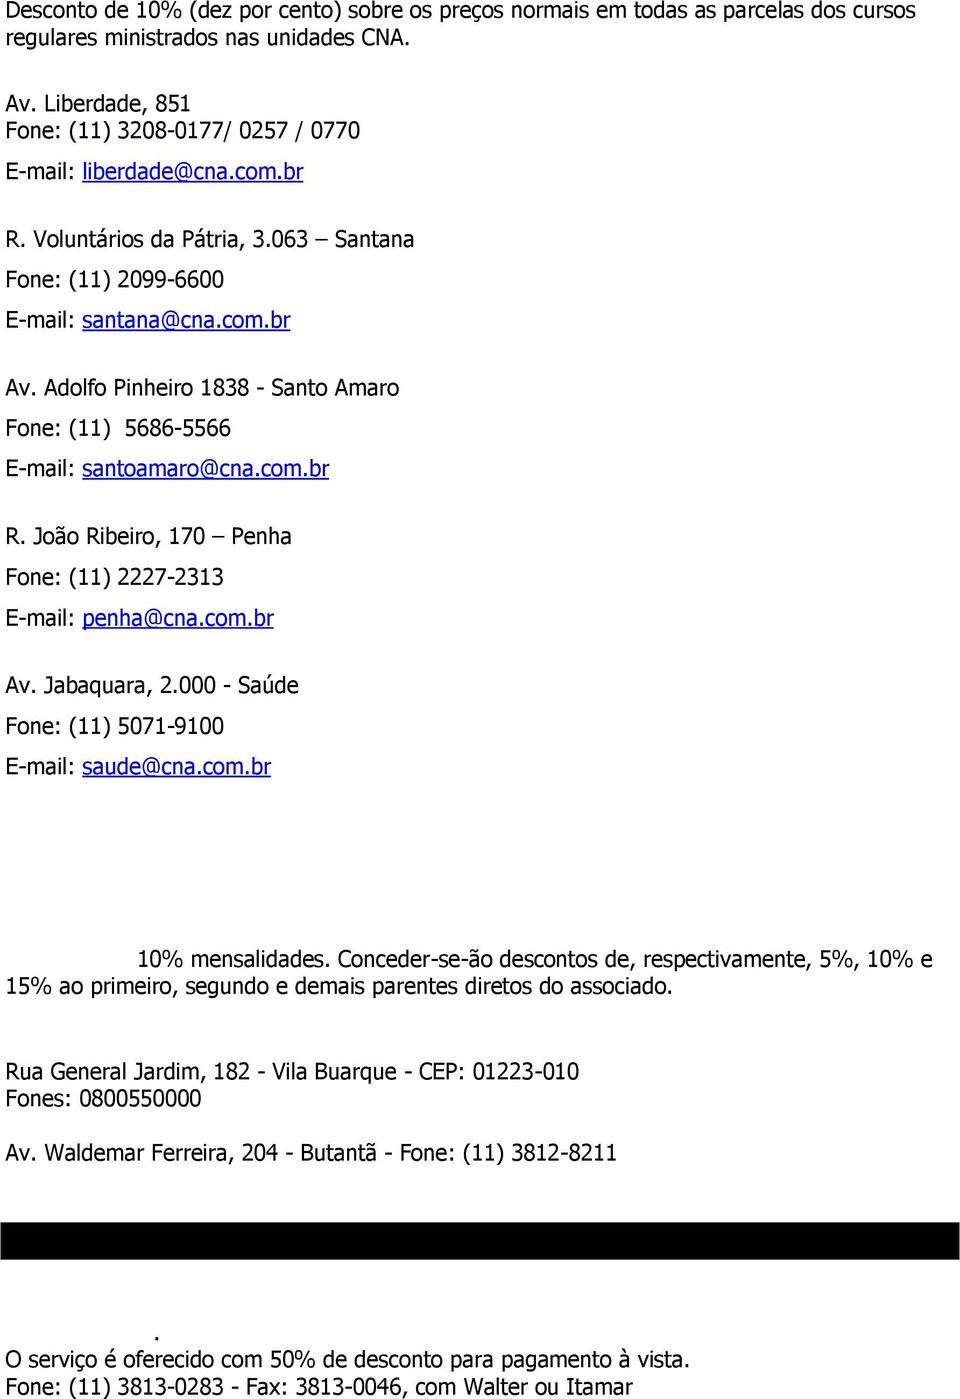 Adolfo Pinheiro 1838 - Santo Amaro Fone: (11) 5686-5566 E-mail: santoamaro@cna.com.br R. João Ribeiro, 170 Penha Fone: (11) 2227-2313 E-mail: penha@cna.com.br Av. Jabaquara, 2.